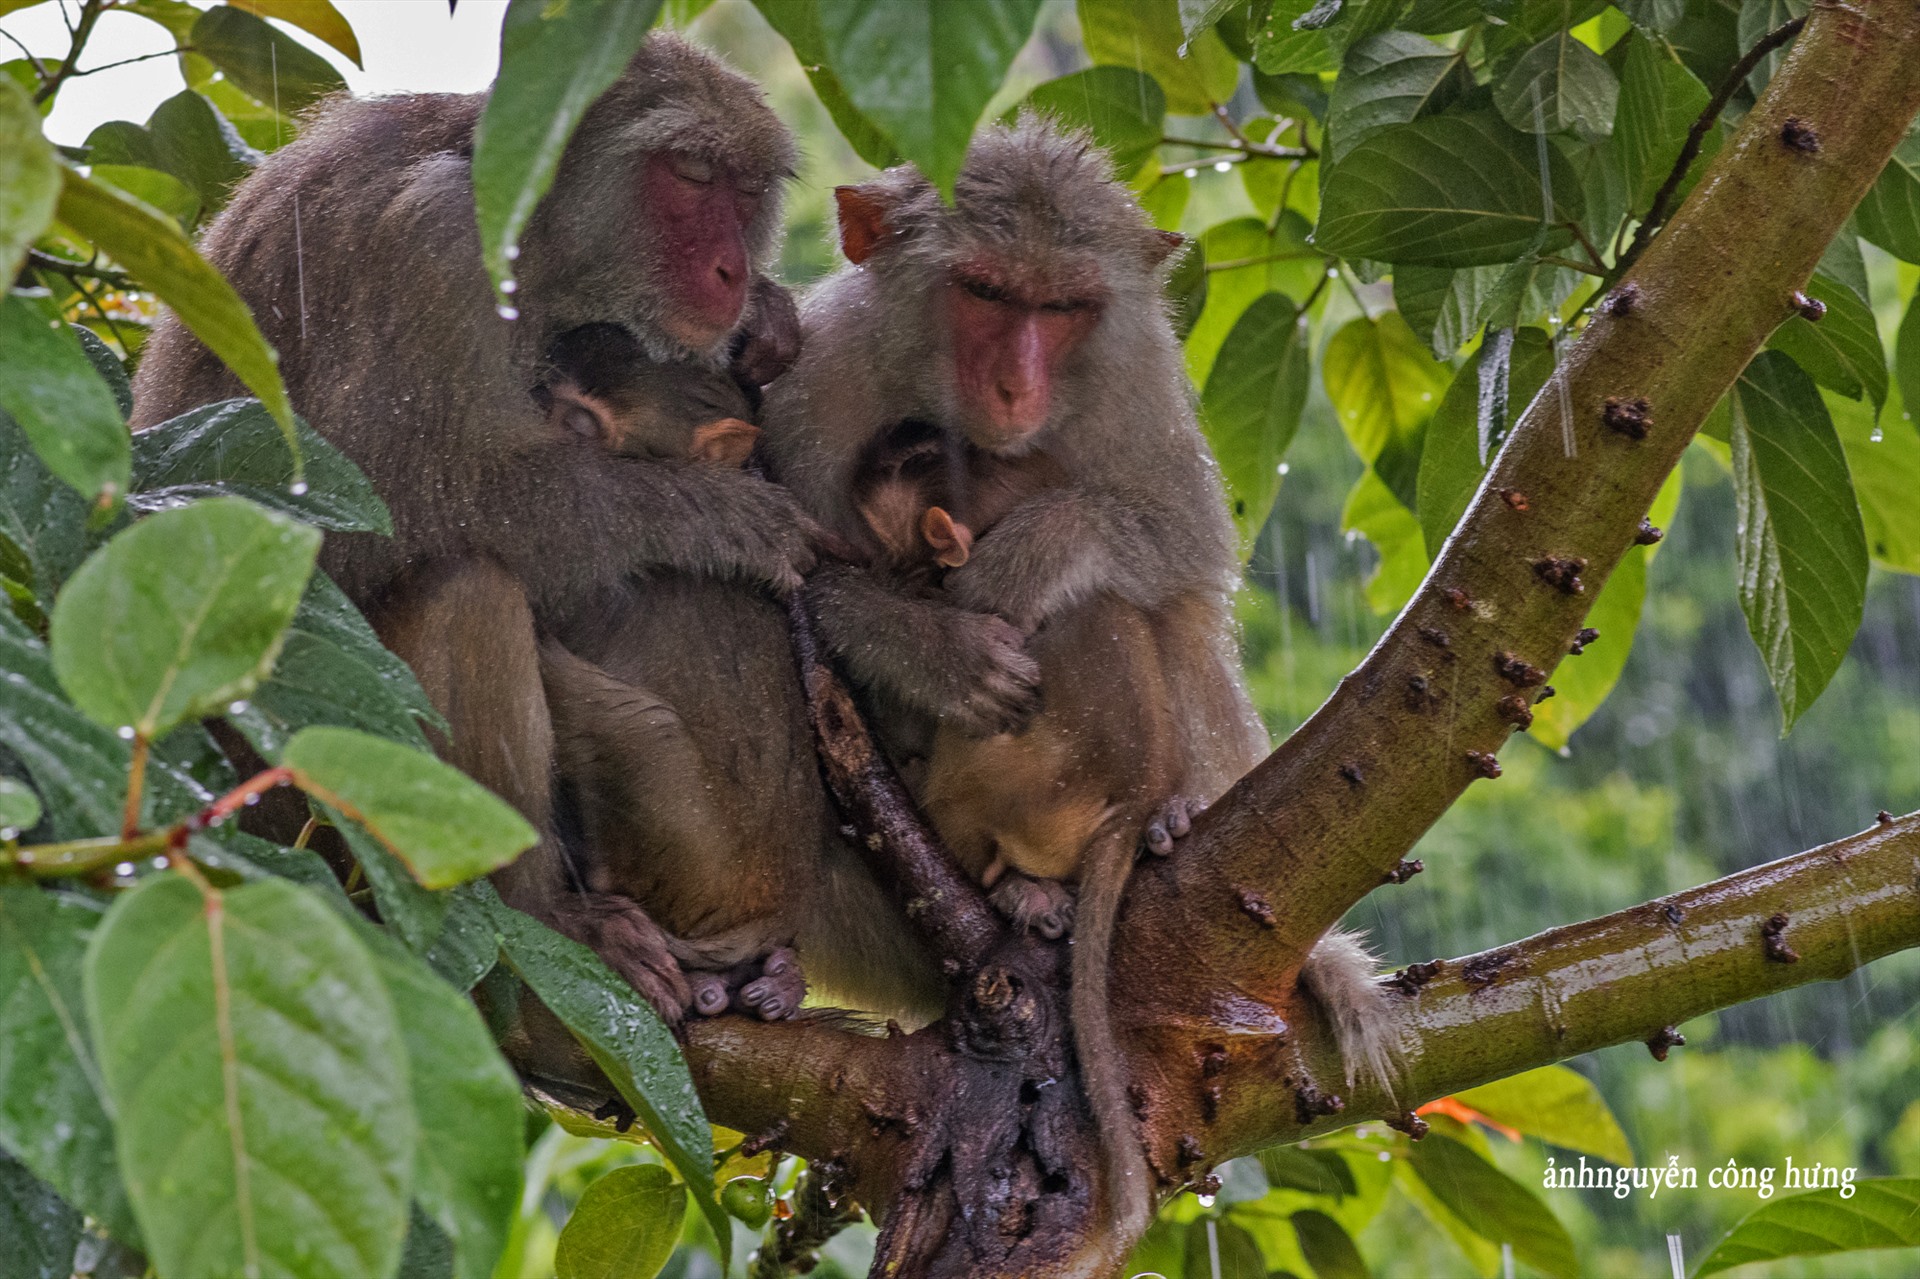 Đảo khỉ là một địa điểm vui chơi thú vị và nổi tiếng trên thế giới. Bạn sẽ được thỏa sức quan sát và chơi đùa với đàn khỉ đáng yêu ở đây. Chắc chắn bạn sẽ có những trải nghiệm tuyệt vời với hình ảnh của đảo khỉ.